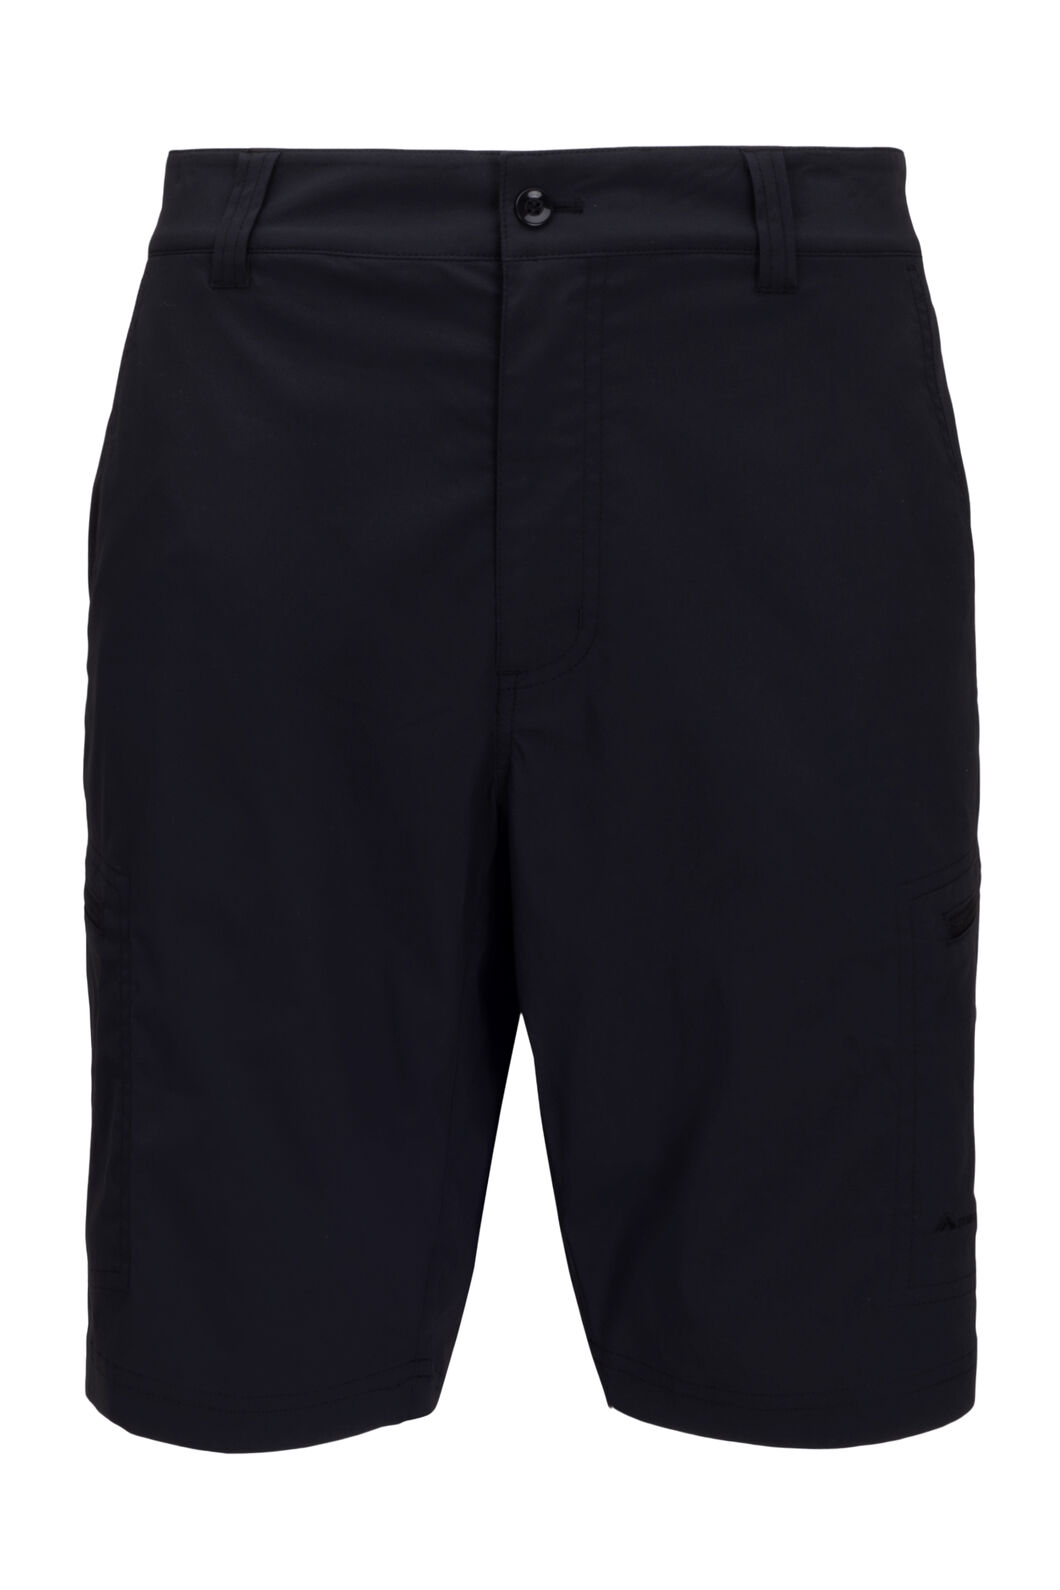 Macpac Men's Drift Shorts | Macpac